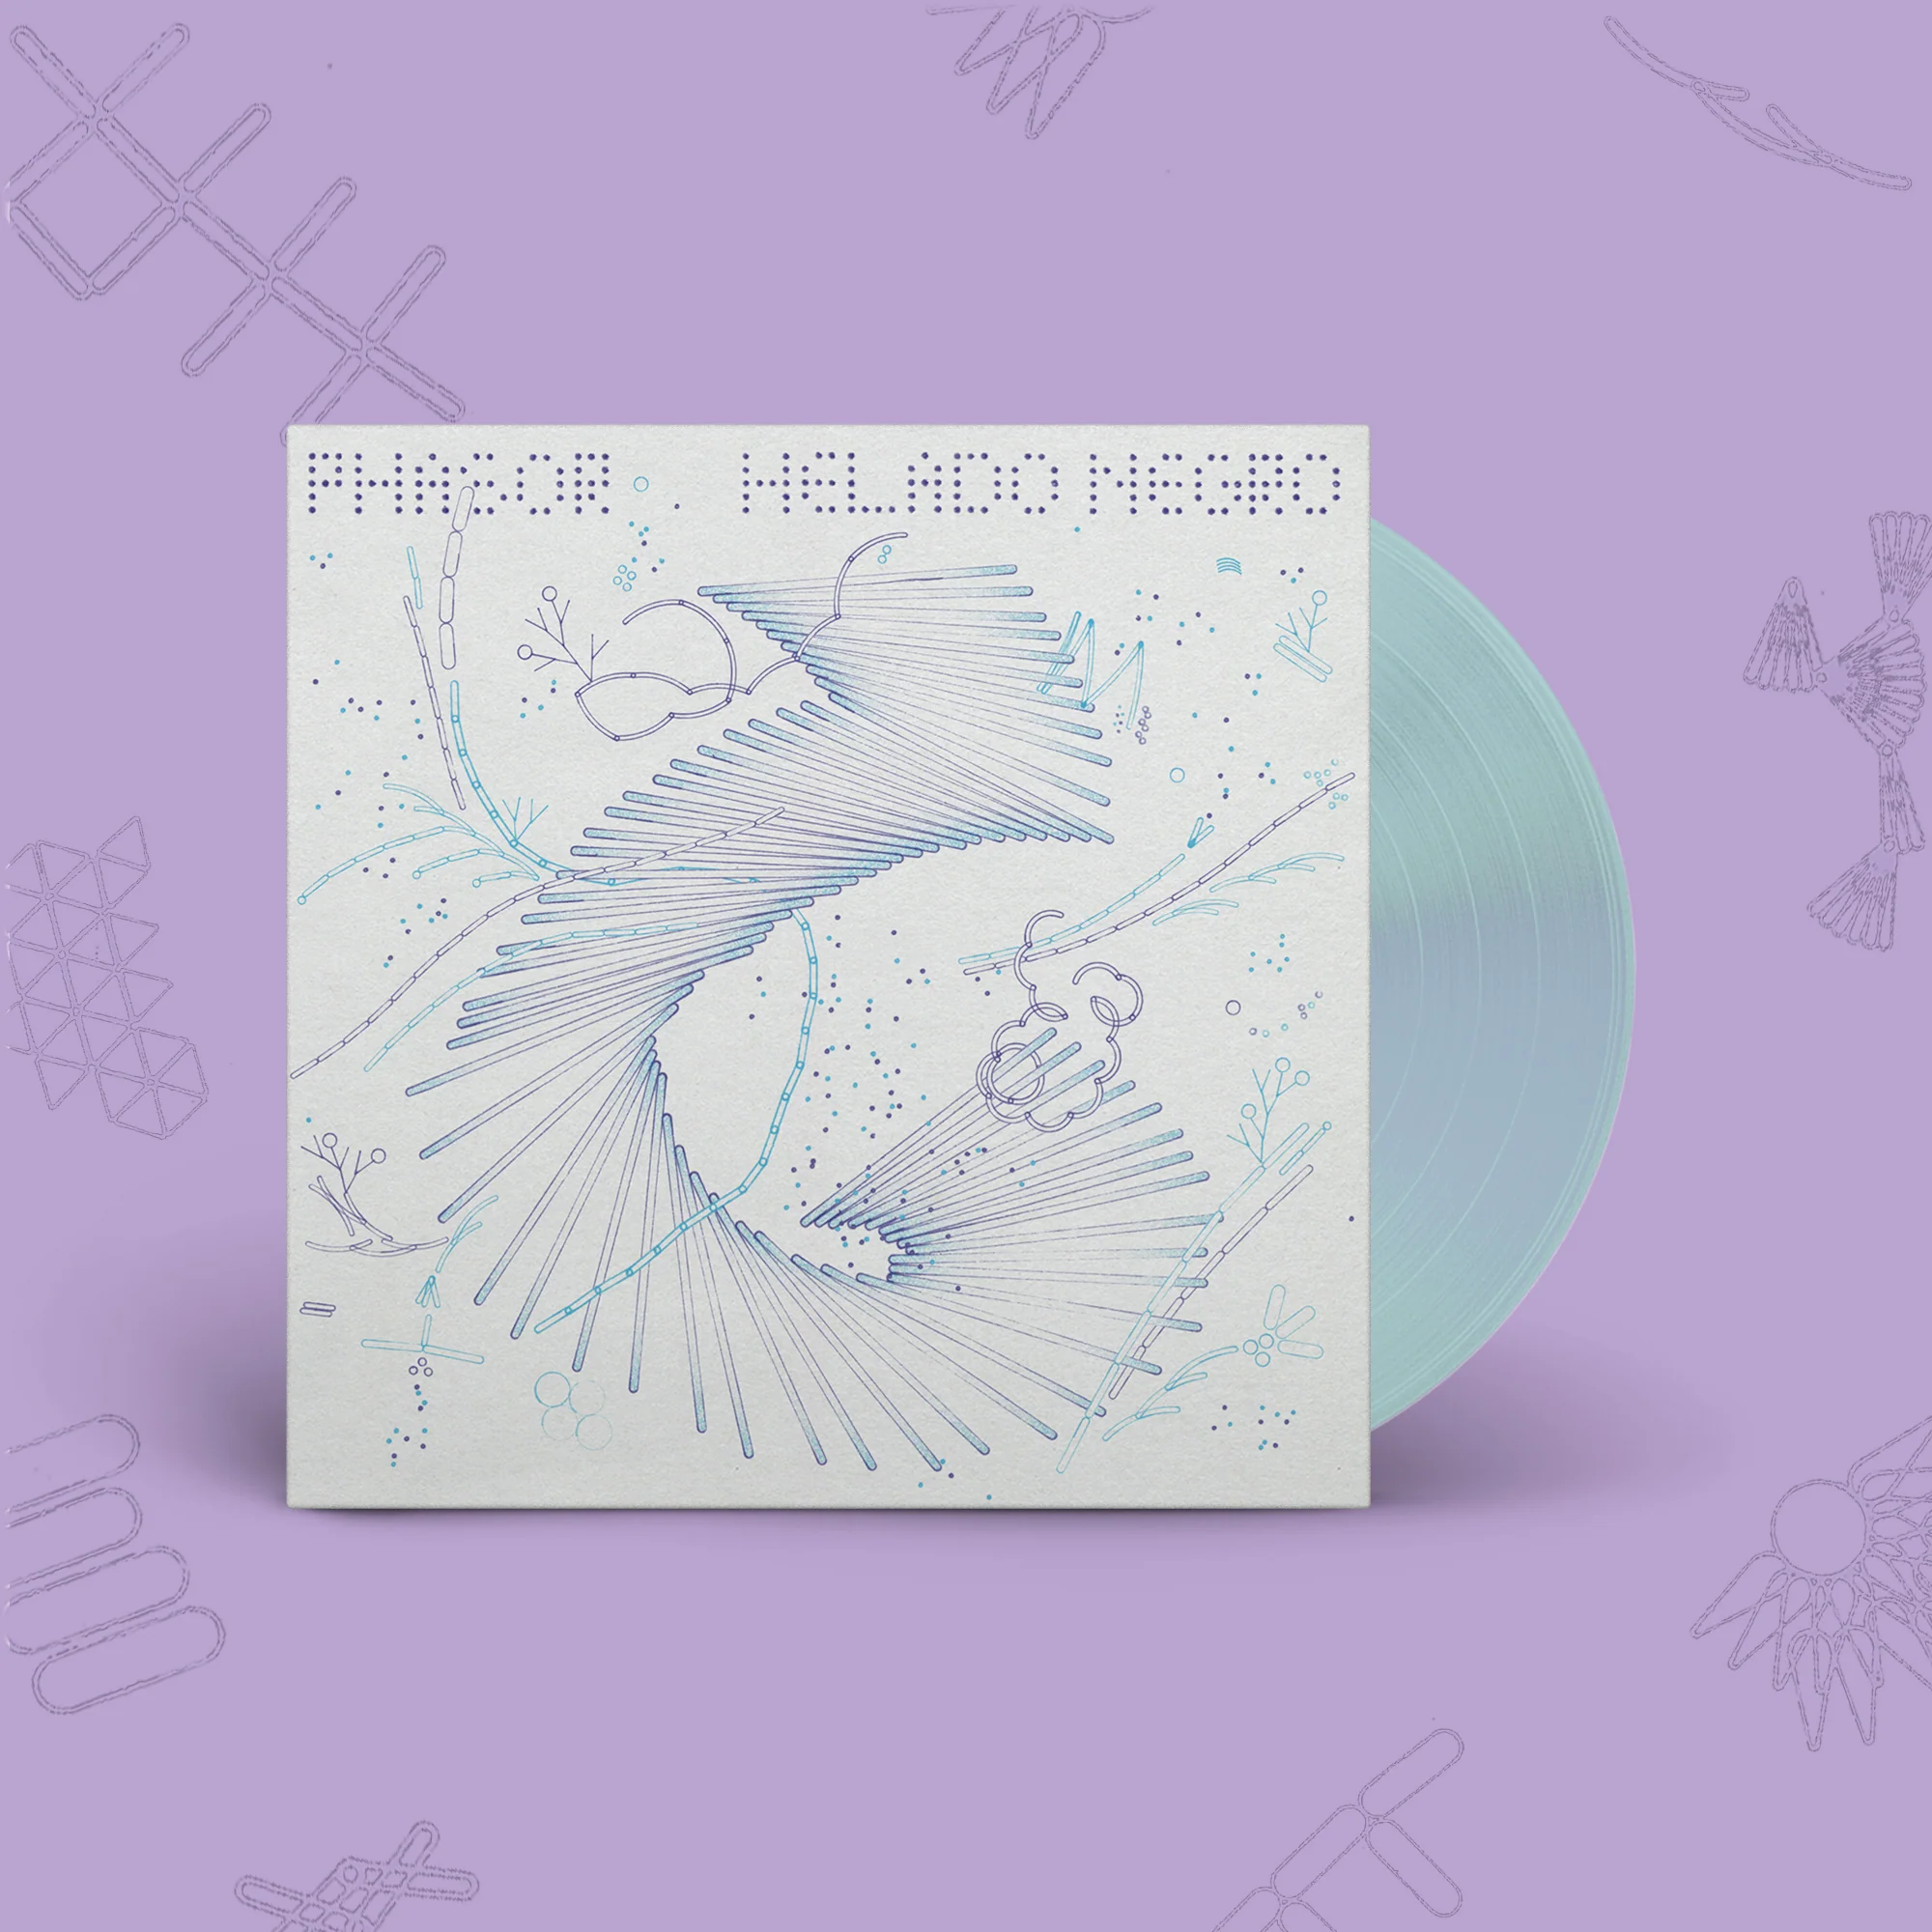 Helado Negro "Phasor" LP limitado